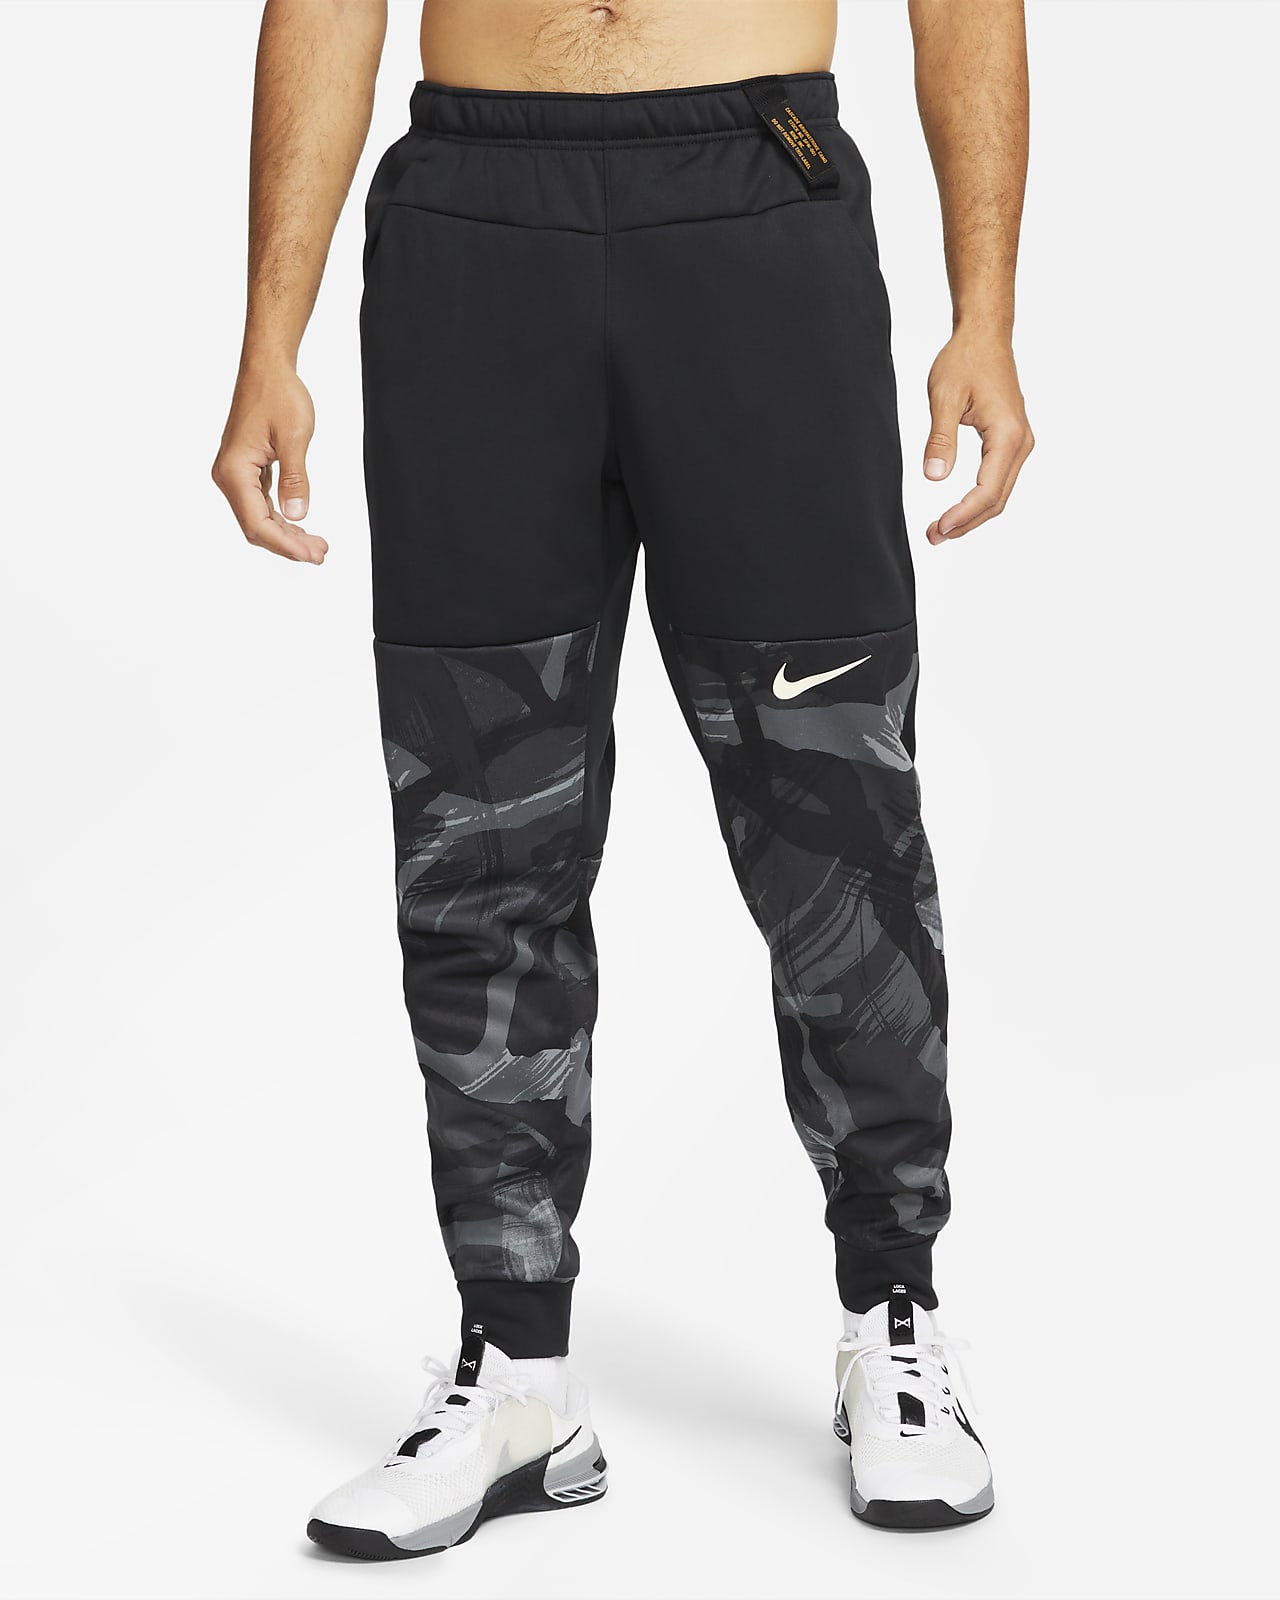 Pantaloni da training camo affusolati Nike Therma-FIT – Uomo